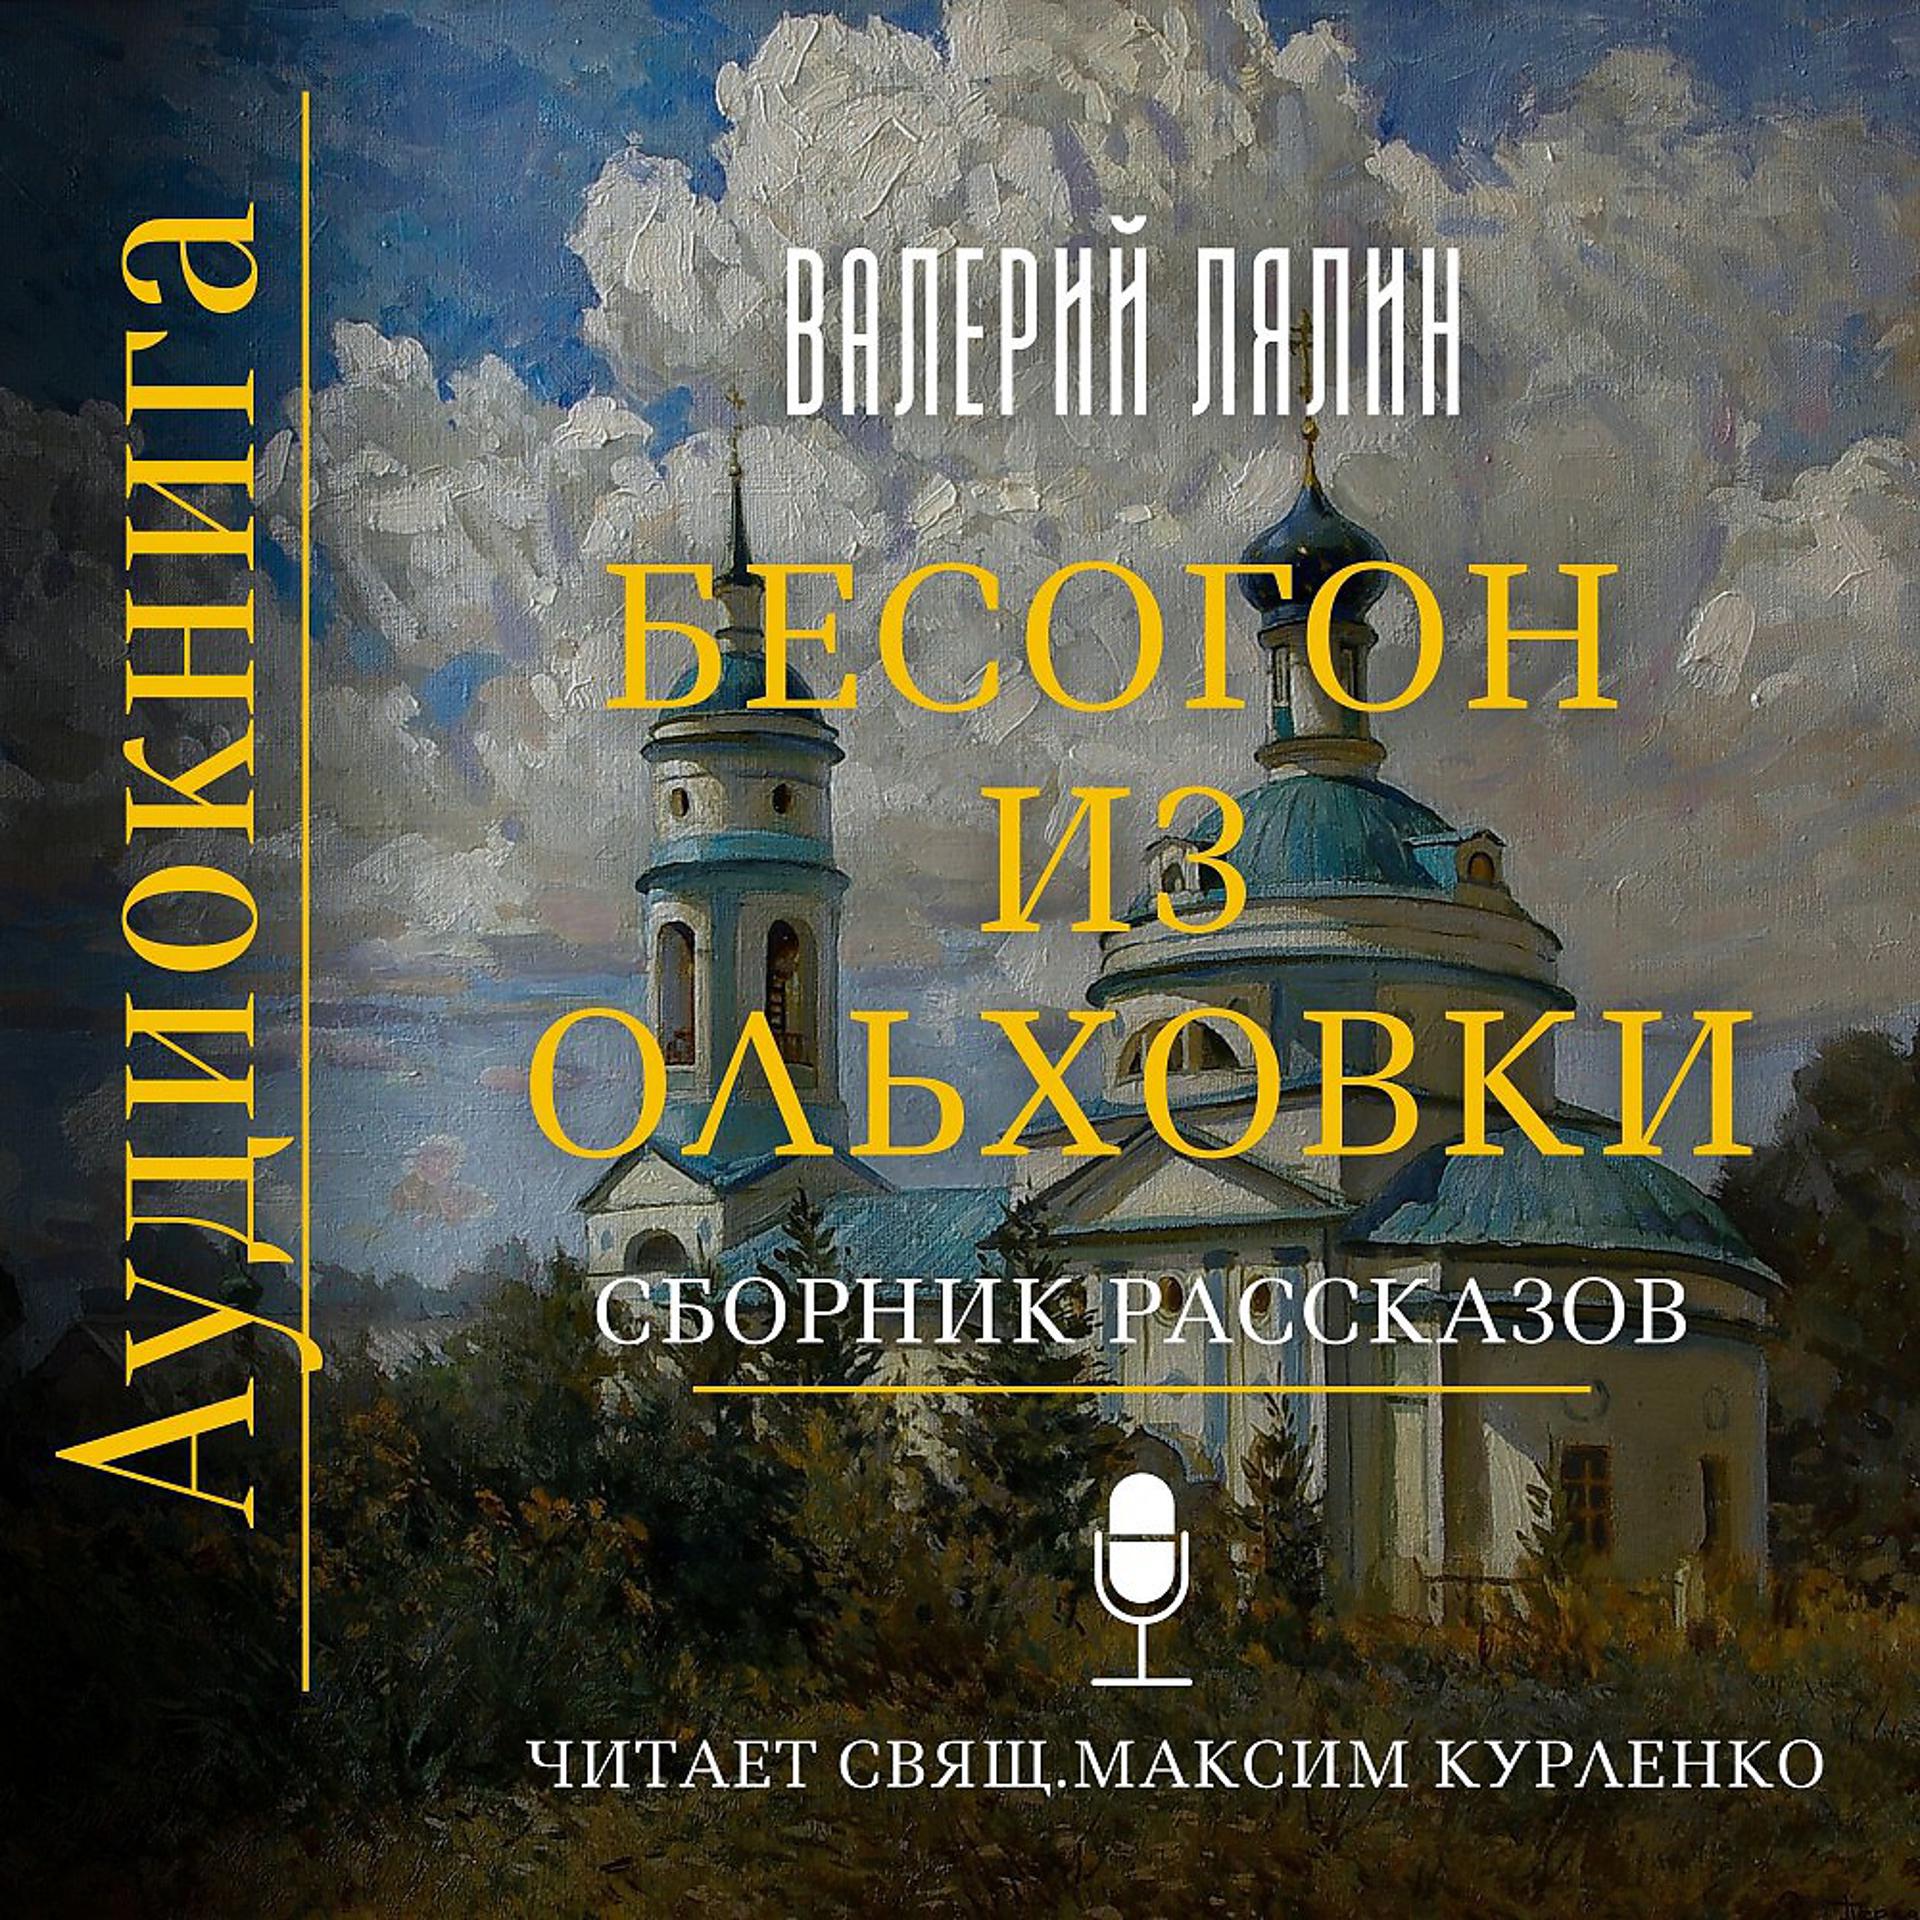 Постер альбома Валерий Лялин - Бесогон из Ольховки. Сборник рассказов.